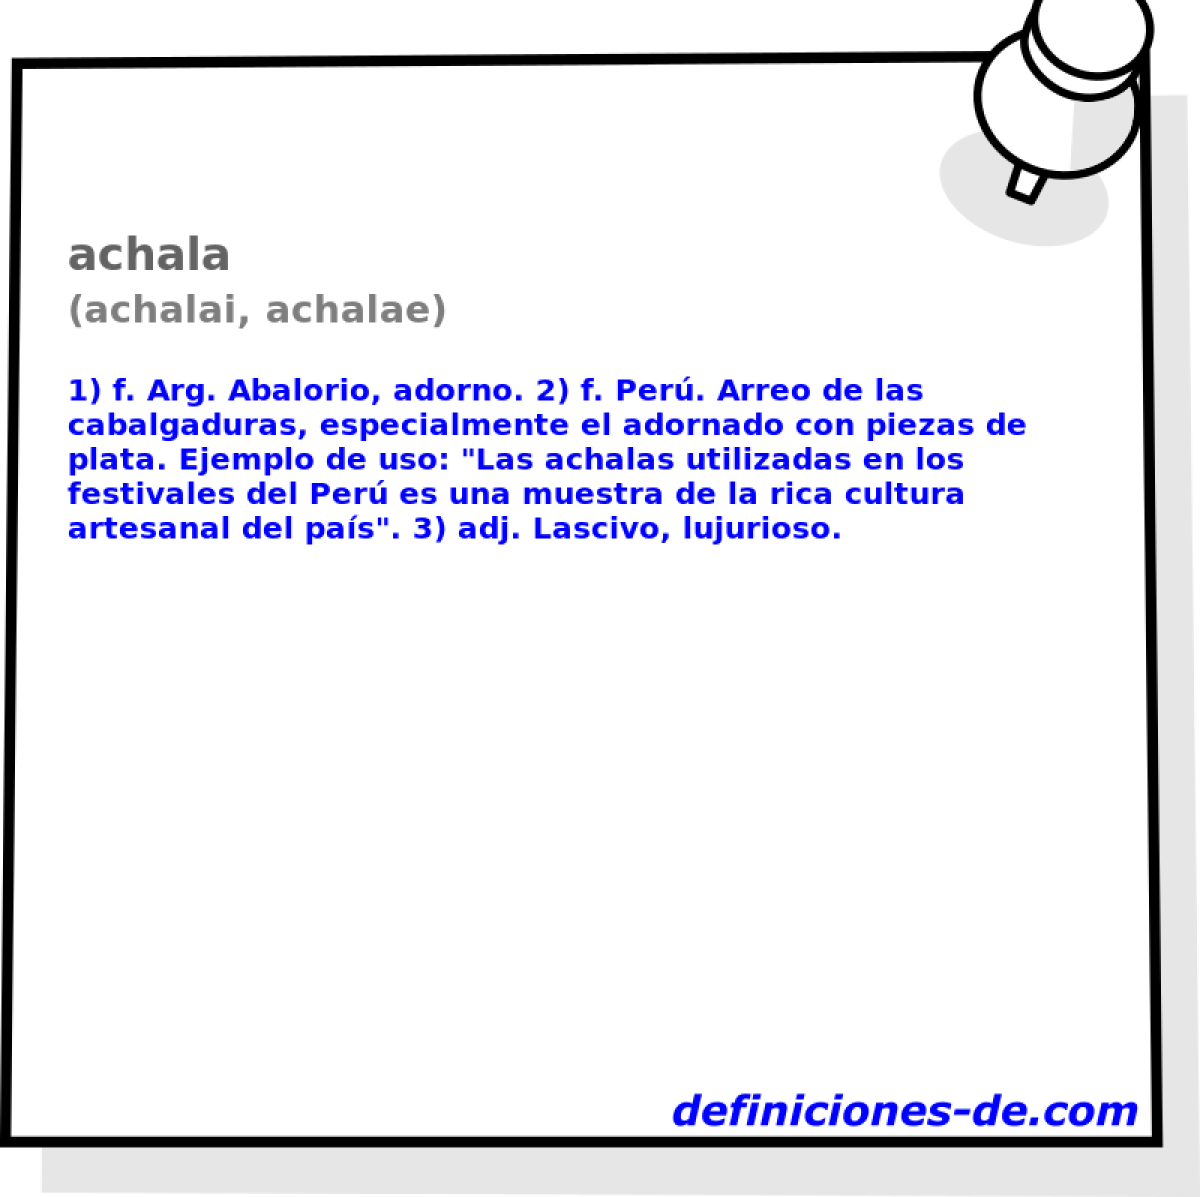 achala (achalai, achalae)